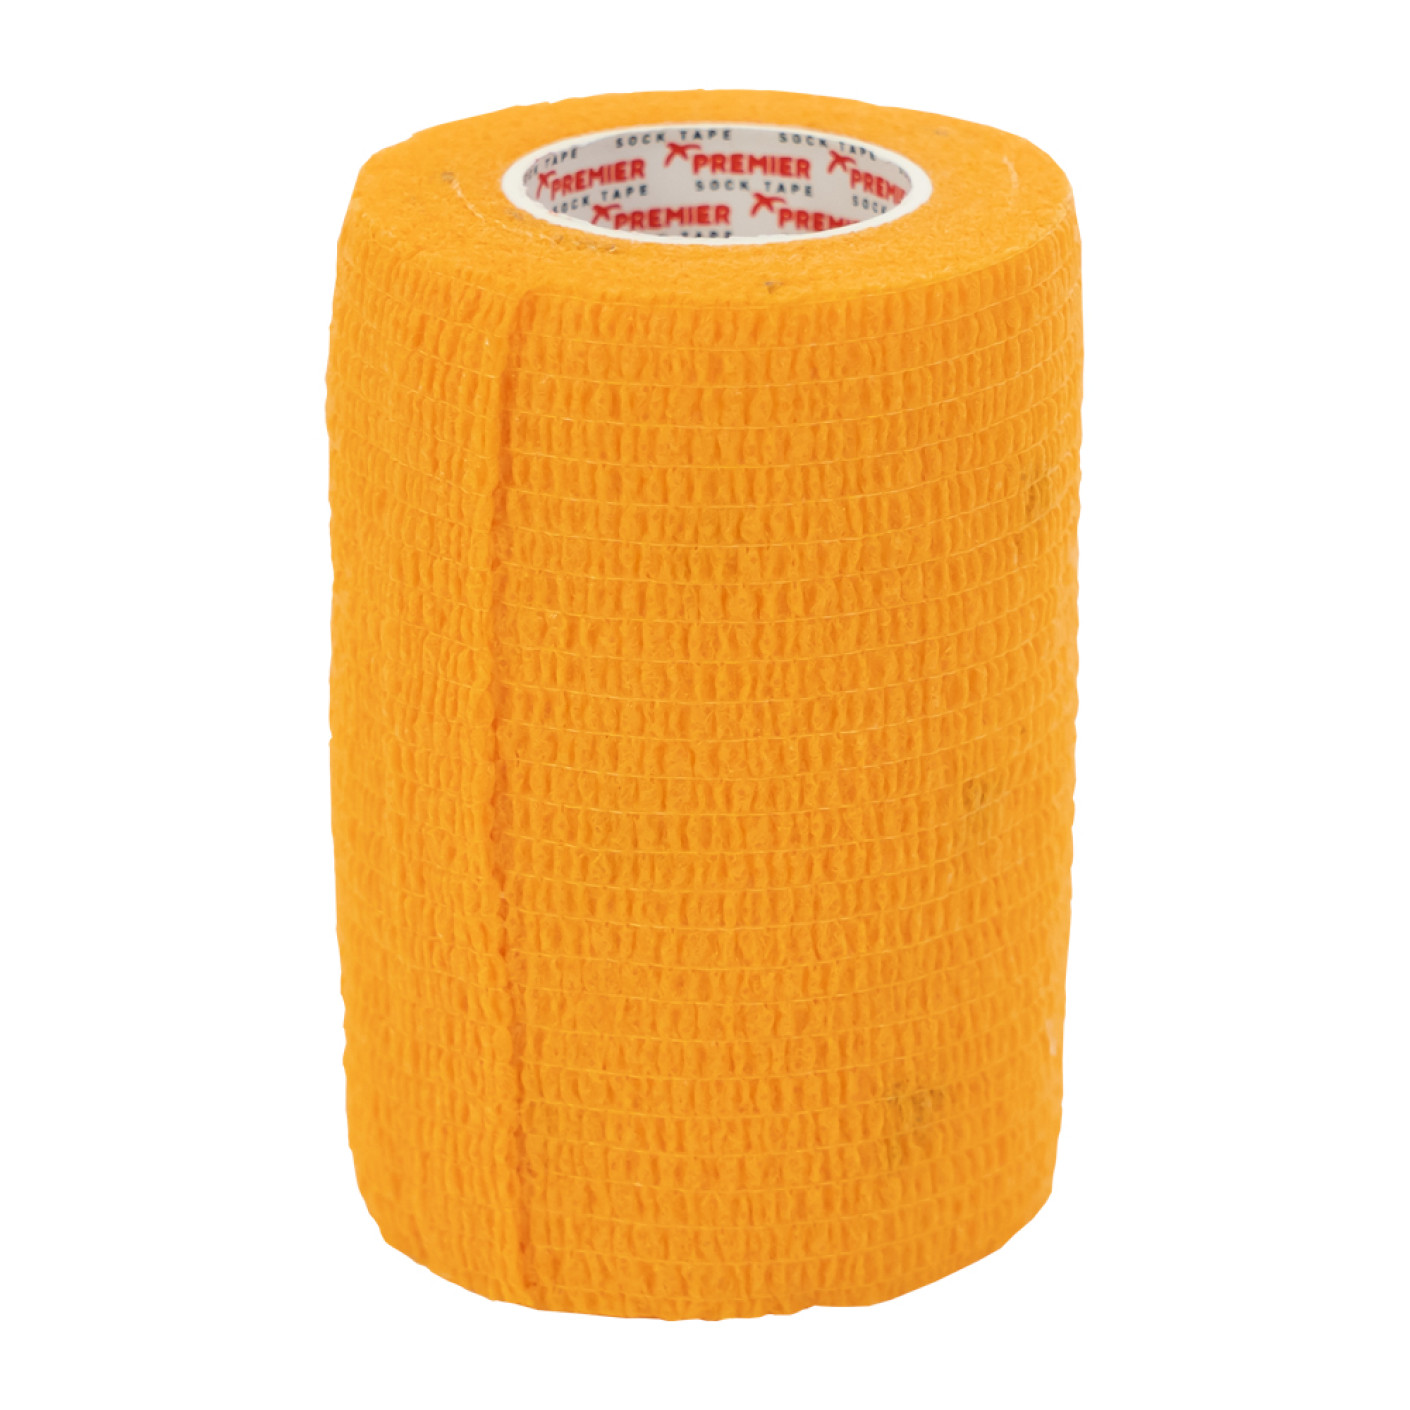 Premier Pro-Wrap Ruban Adhésif Chaussettes 7.5cm Orange